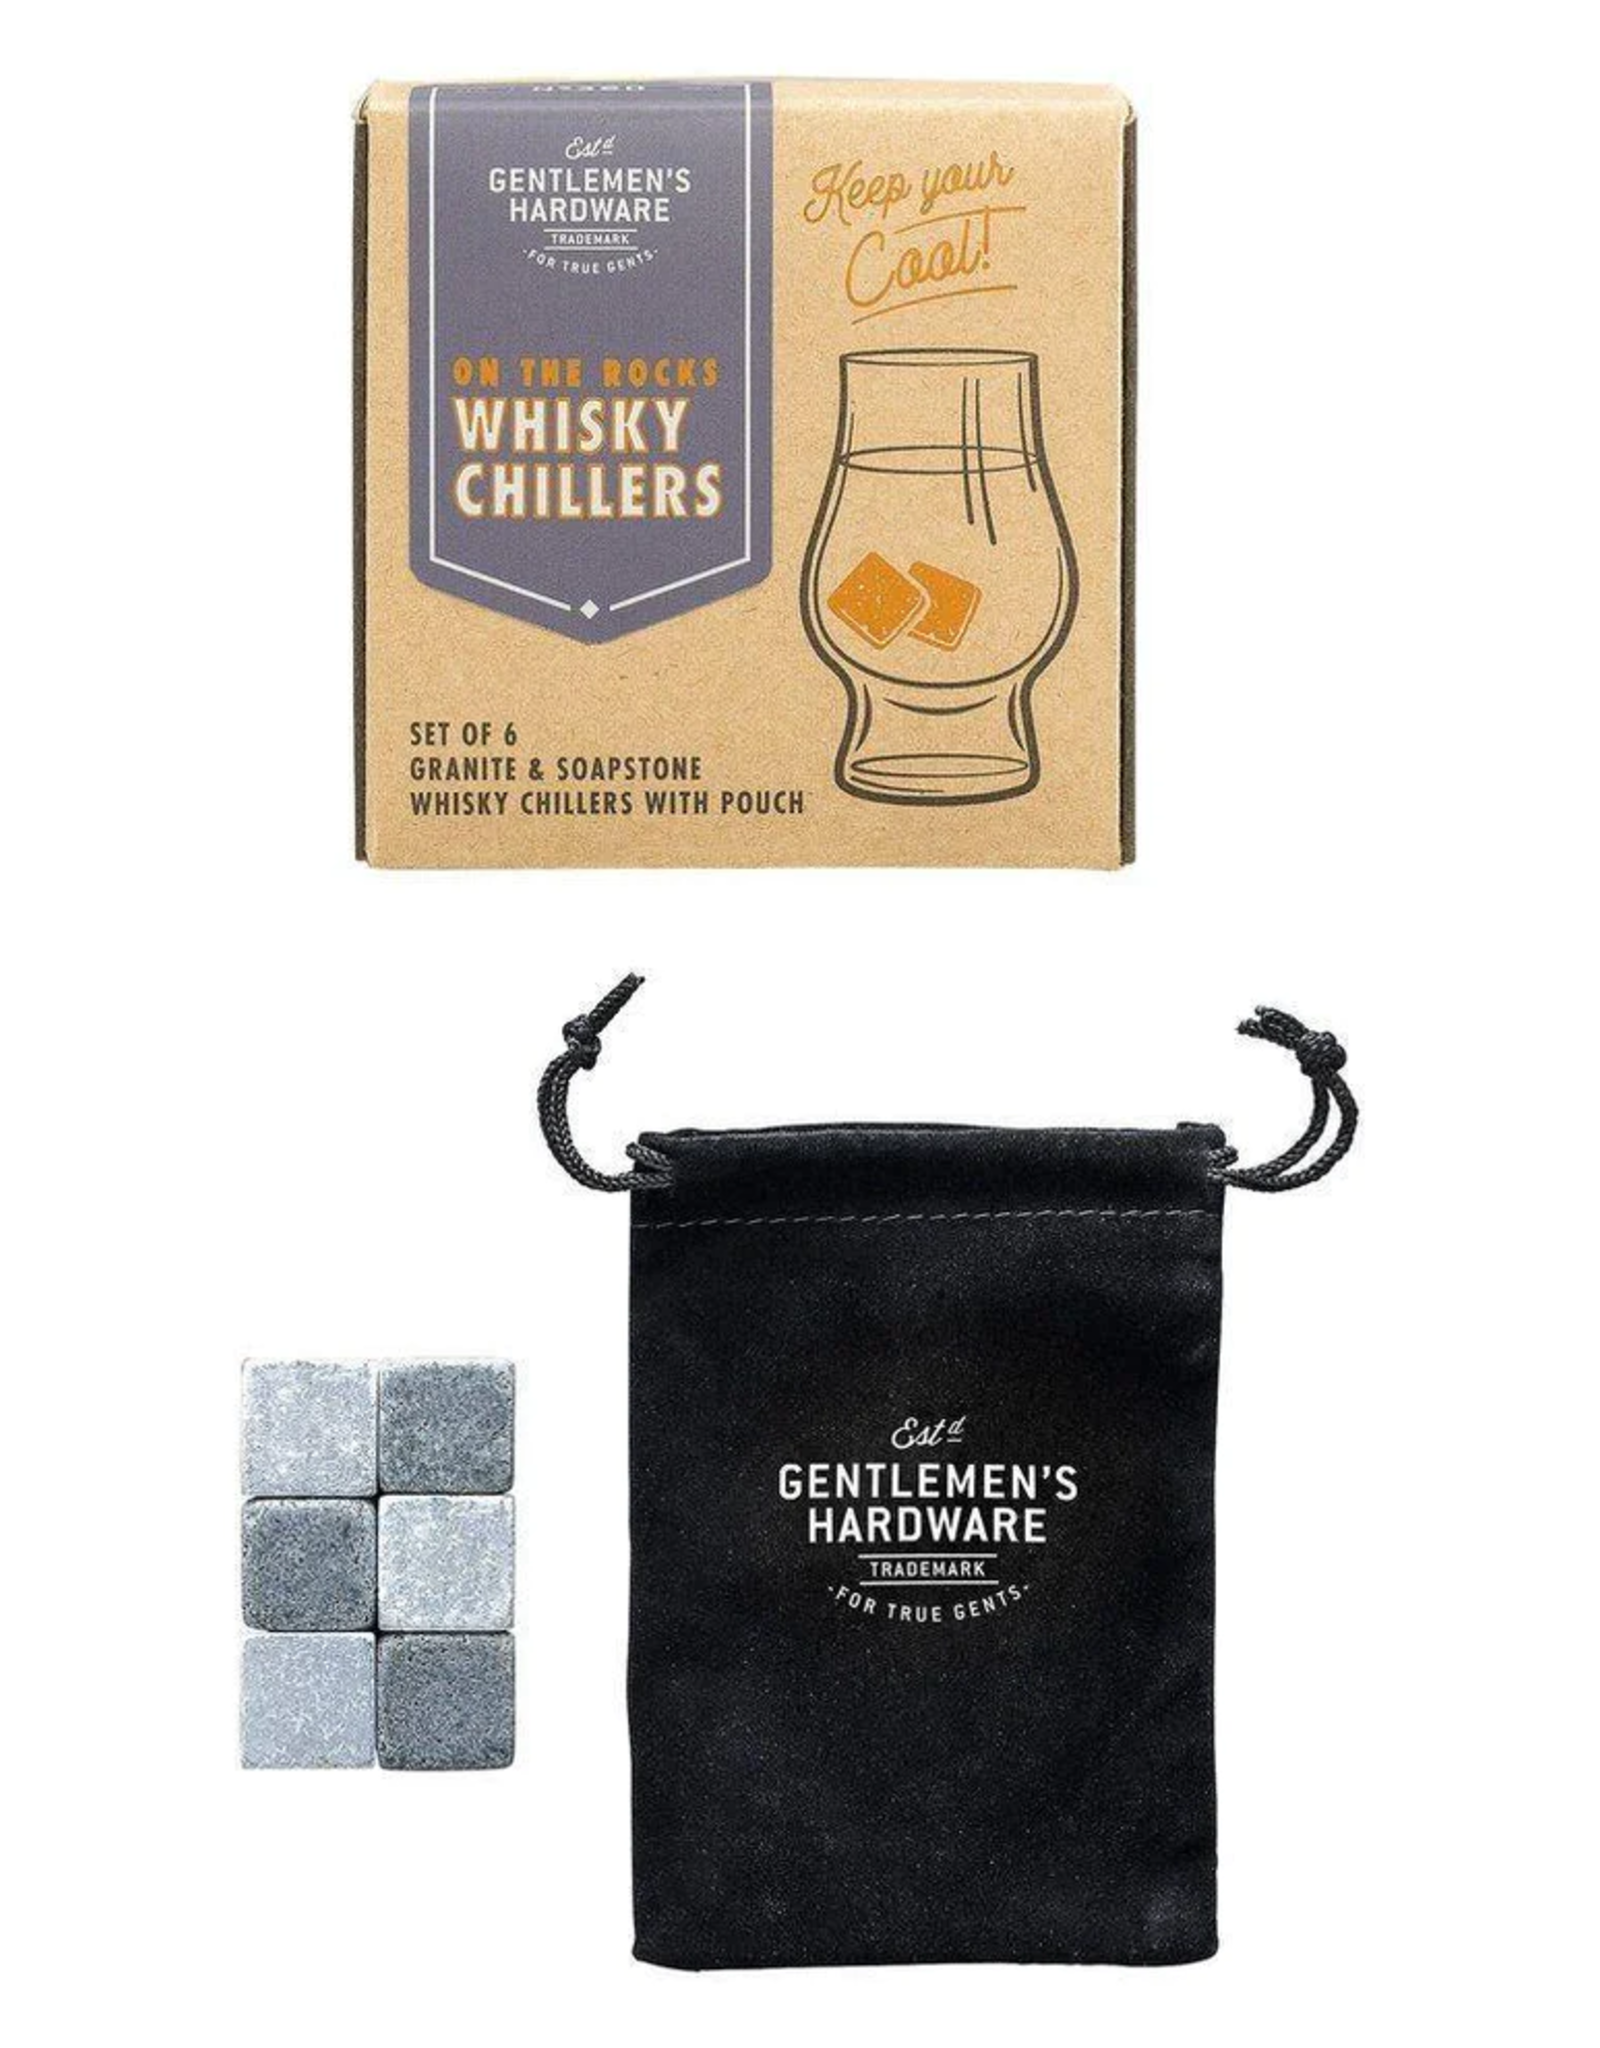 Gentlemens's Hardware Whisky Chillers - Gentlemen's Hardware